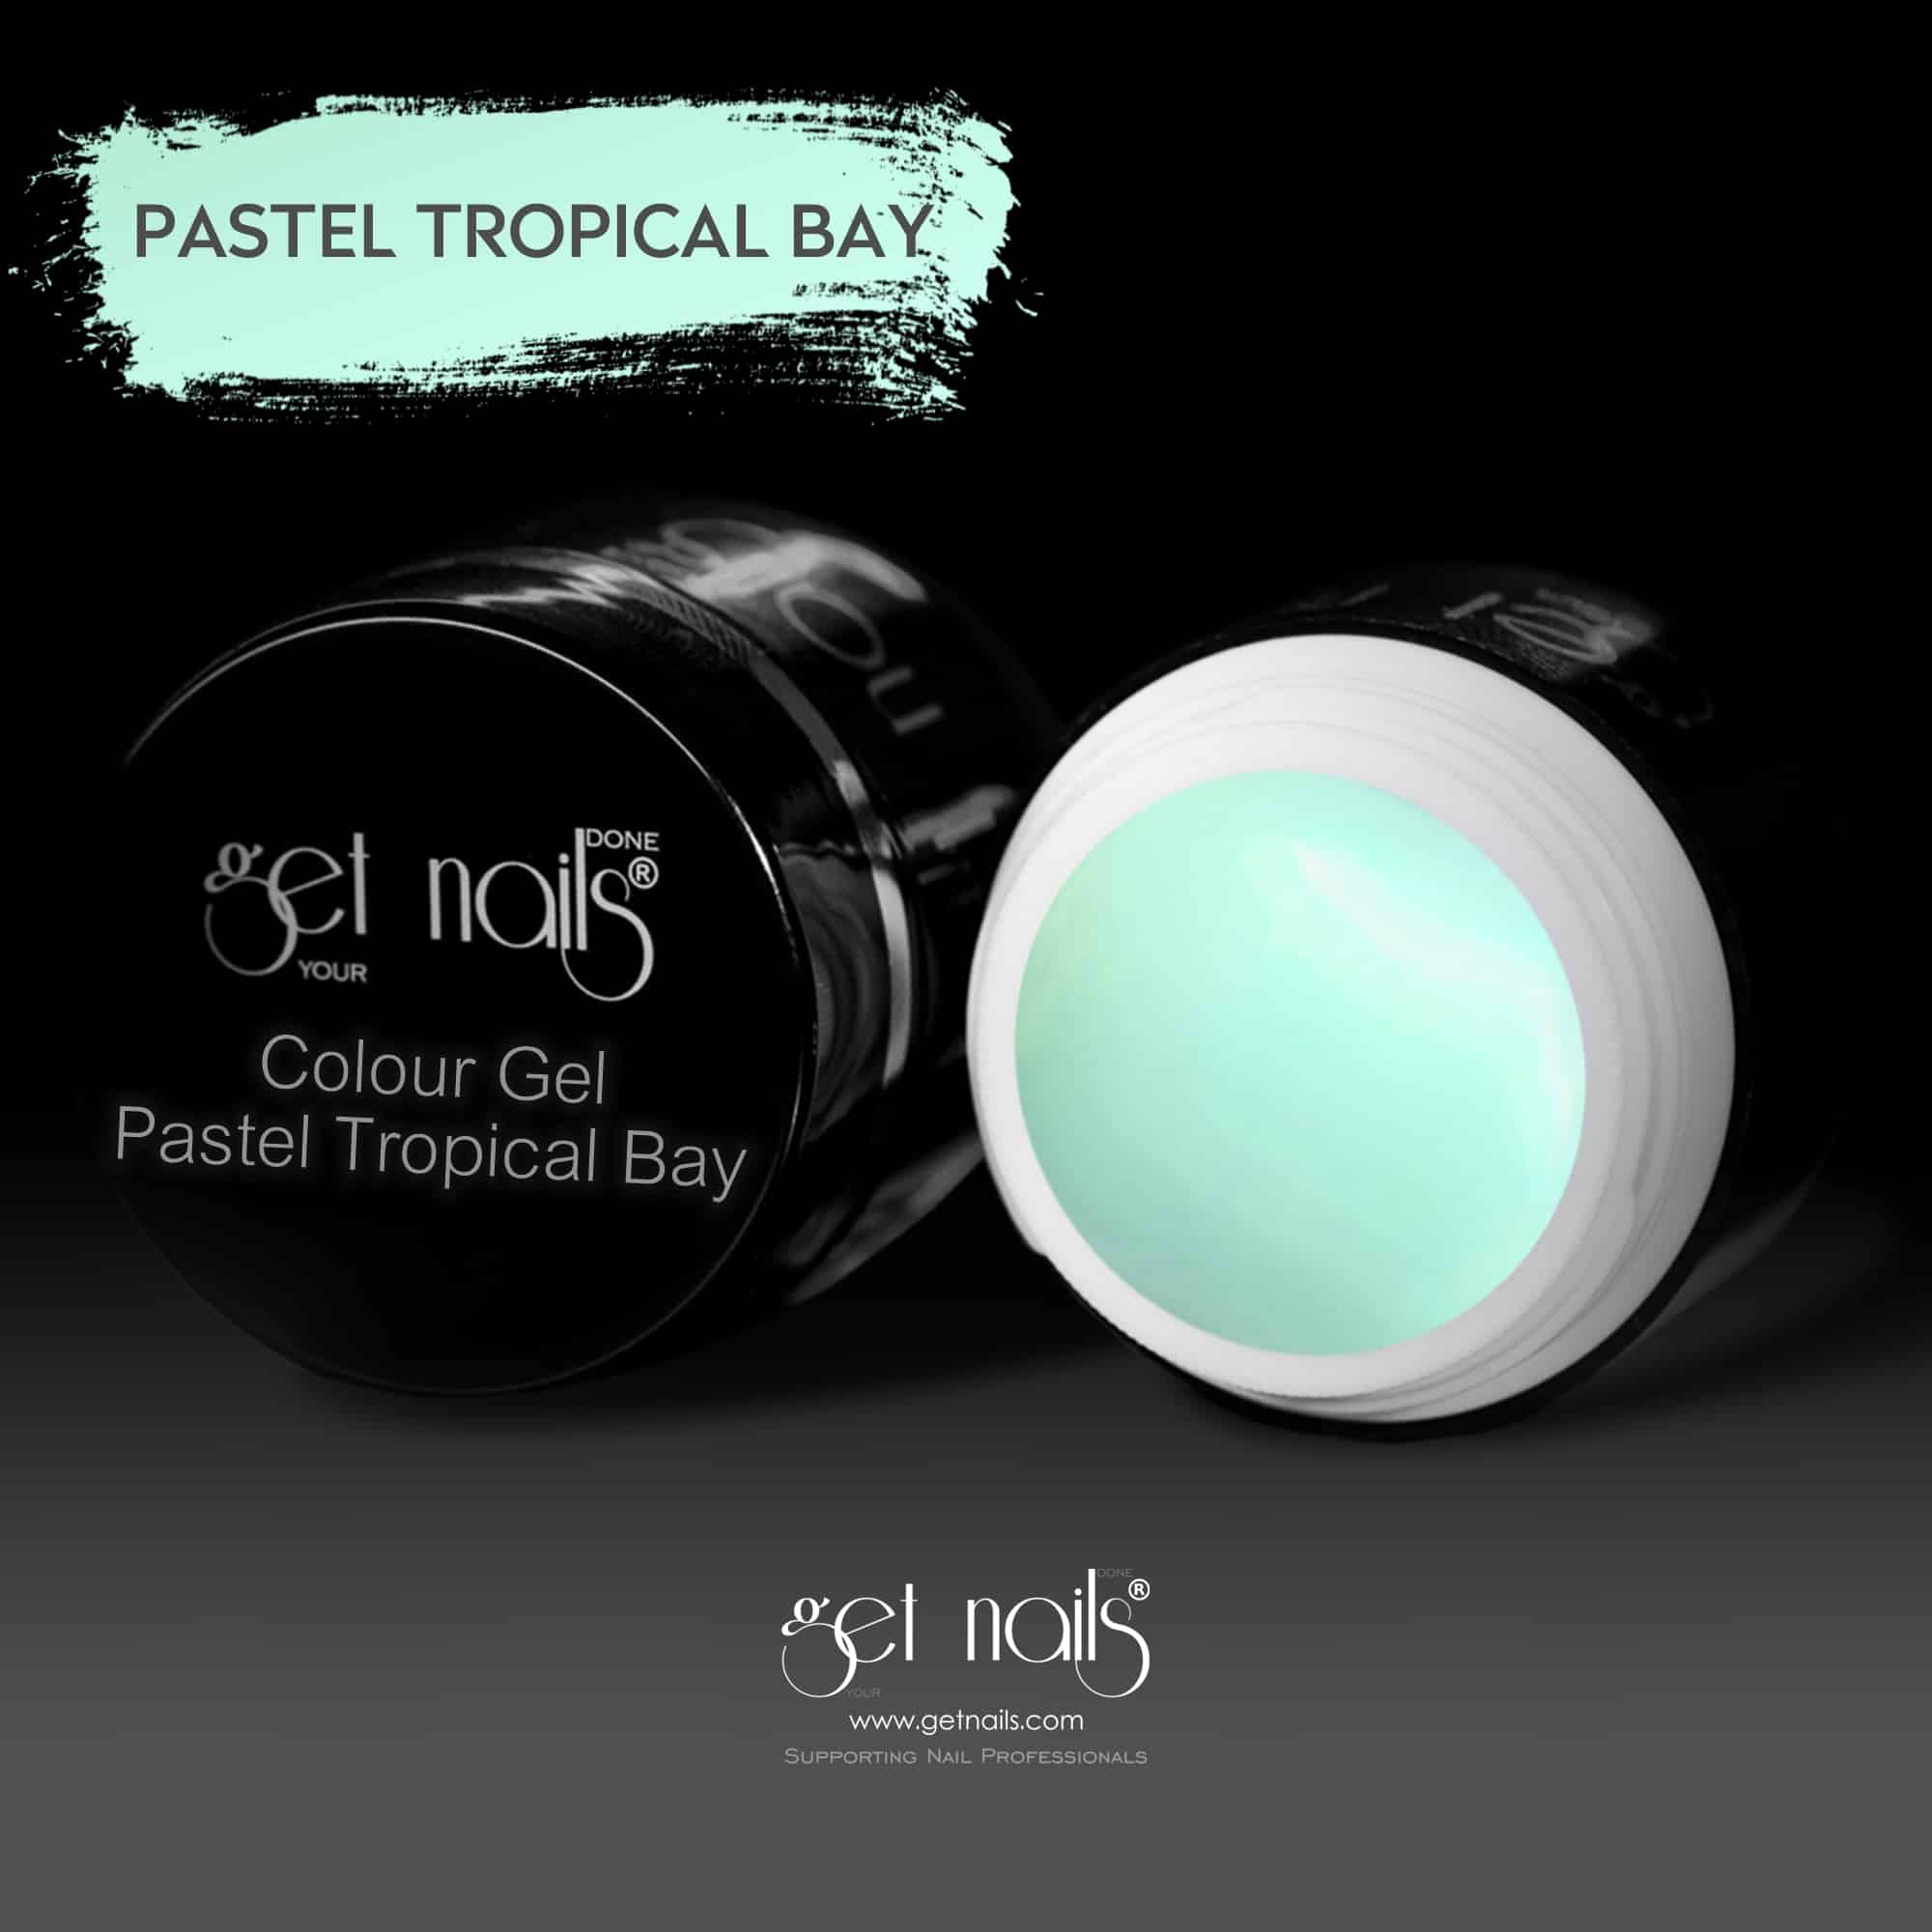 Get Nails Austria - Colour Gel Pastel Tropical Bay 5g